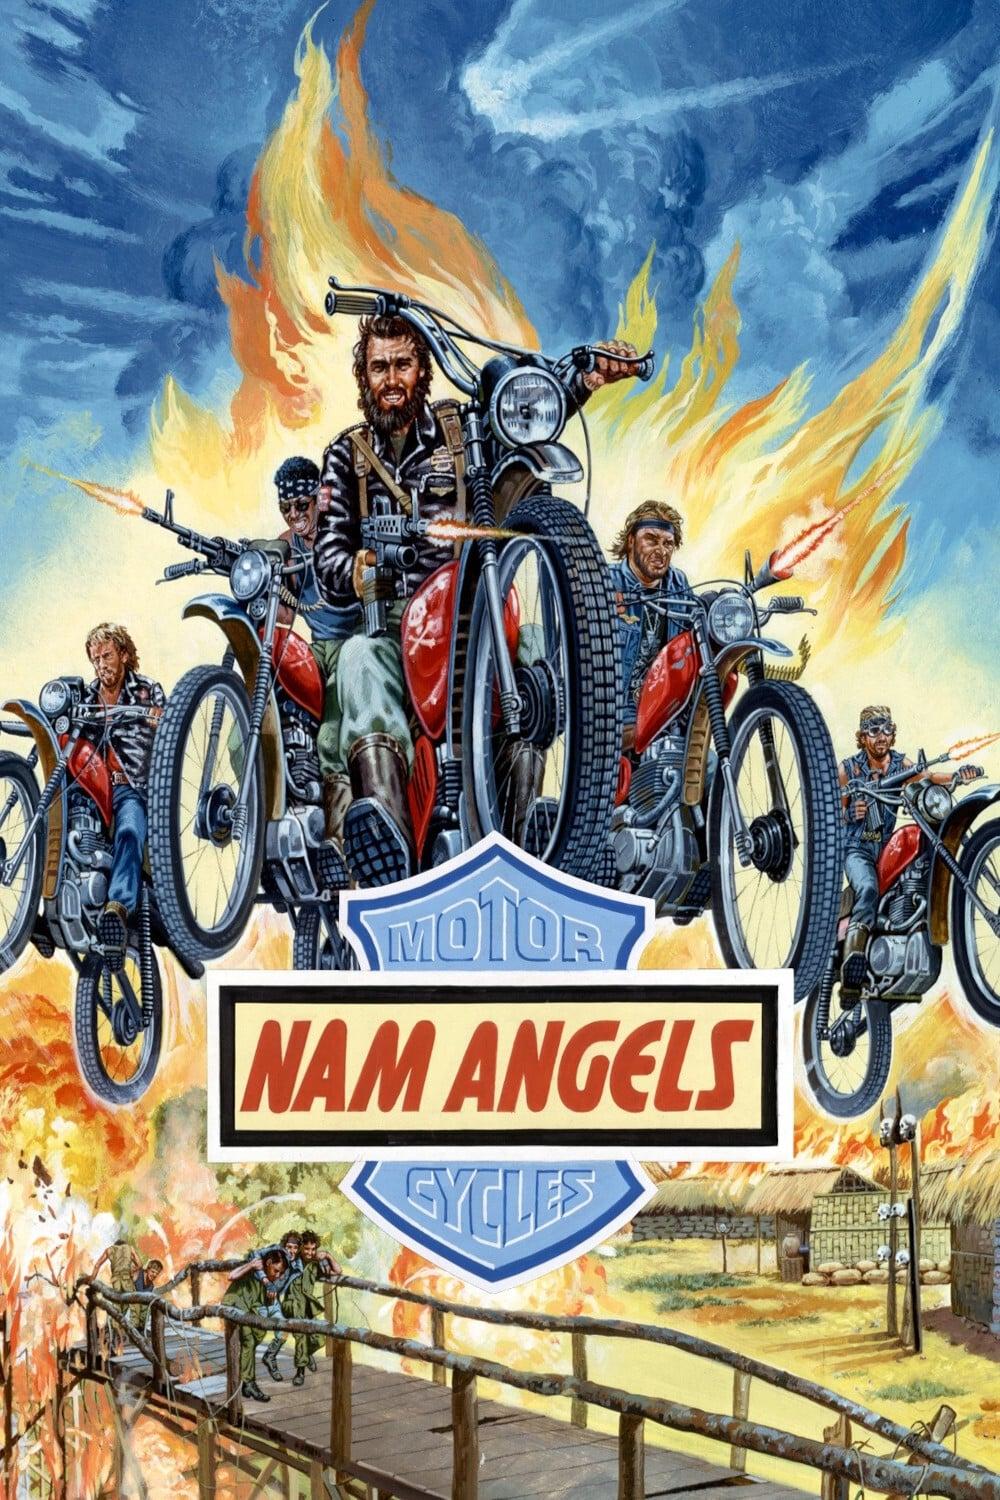 Hells Angels in Vietnam poster